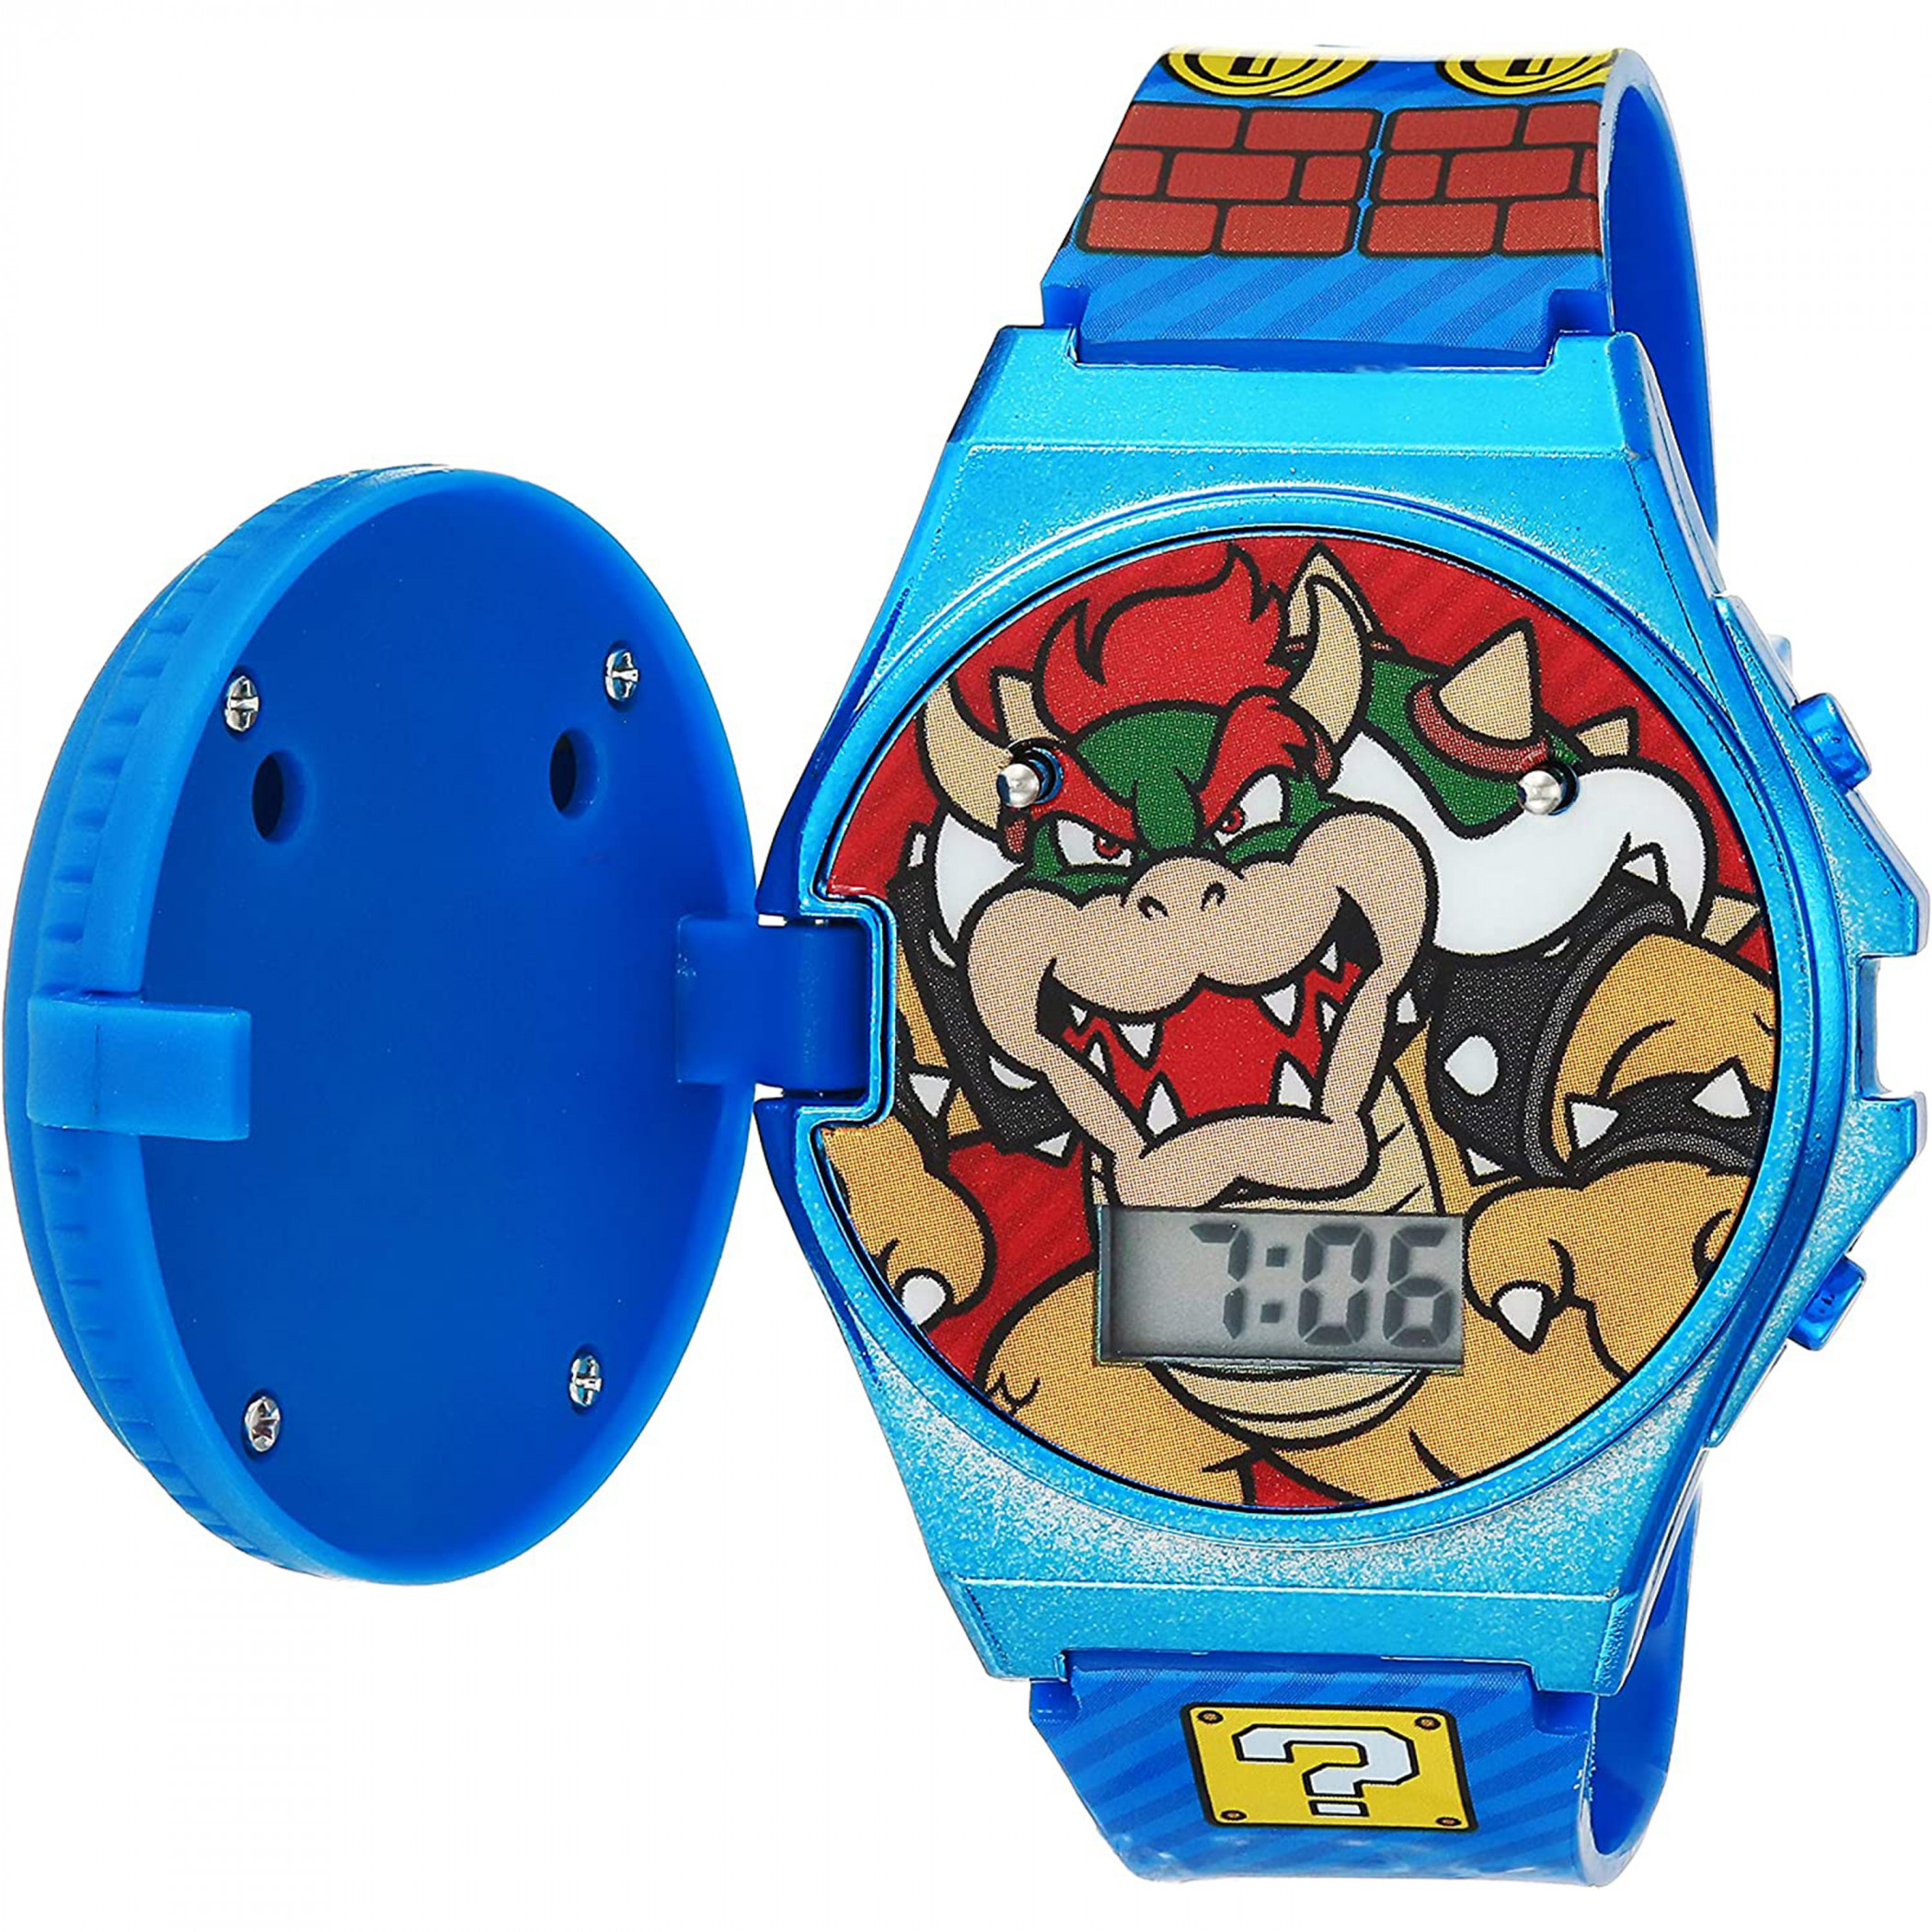 Super Mario Bros. Metallic Case Light Up Pop Top LCD Watch